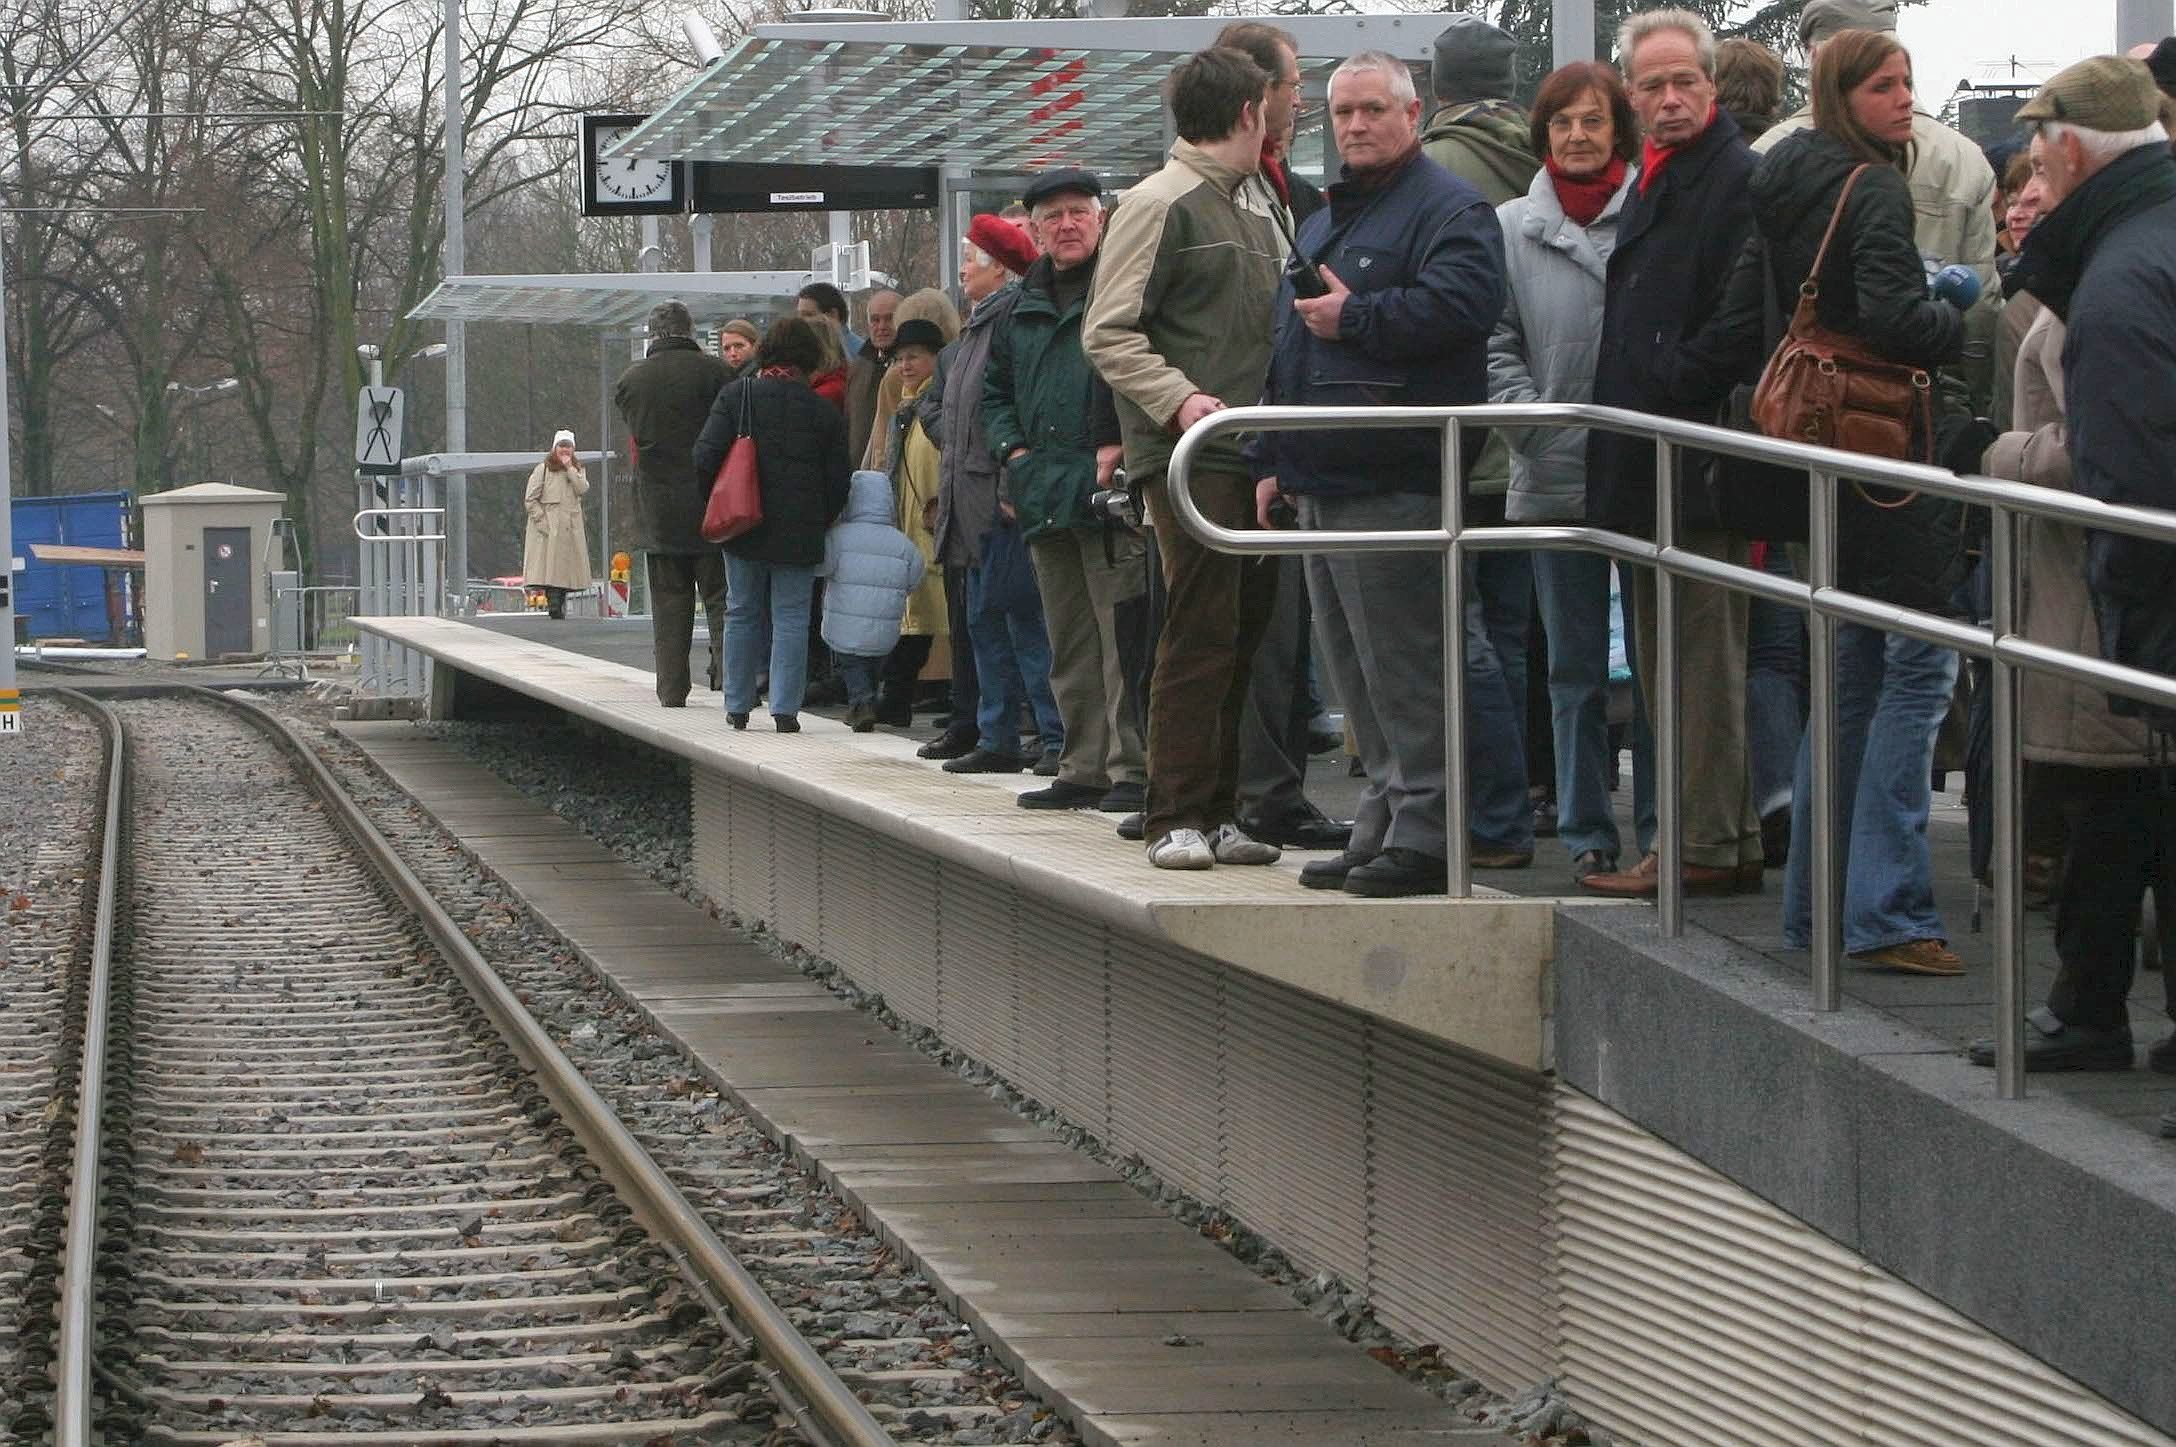 Beispiel 5: In Bielefeld soll ein Wohnviertel besser ans Nahverkehrsnetz angebunden werden - dafür soll ein neuer Hochbahnsteig (hier ein Bild aus Düsseldorf) gebaut werden. Verschwendung!, findet der Bund der Steuerzahler. Die Mehrheit der Bürger sei nämlich der Ansicht, dass das Viertel bereits gut genug angeschlossen ist.